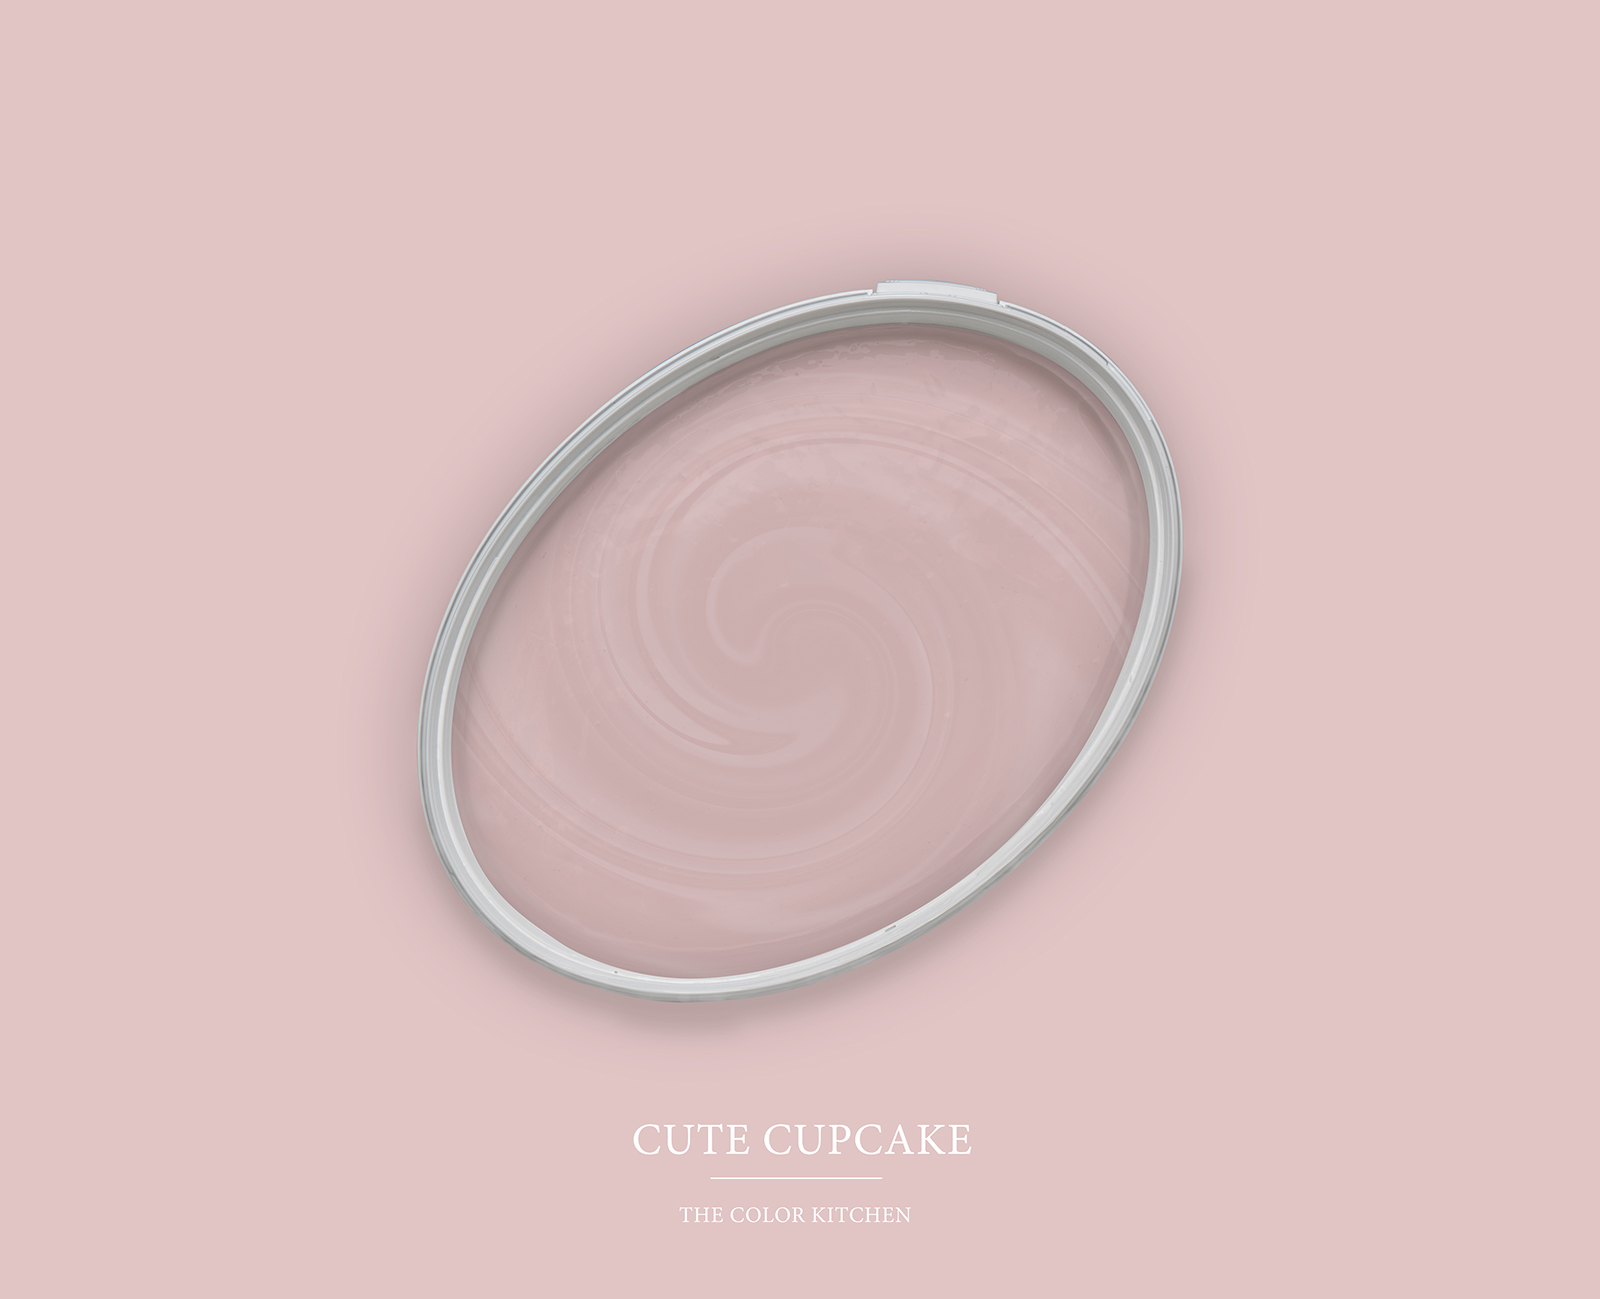 Pittura murale TCK7008 »Cute Cupcake« in rosa delicato – 2,5 litri
